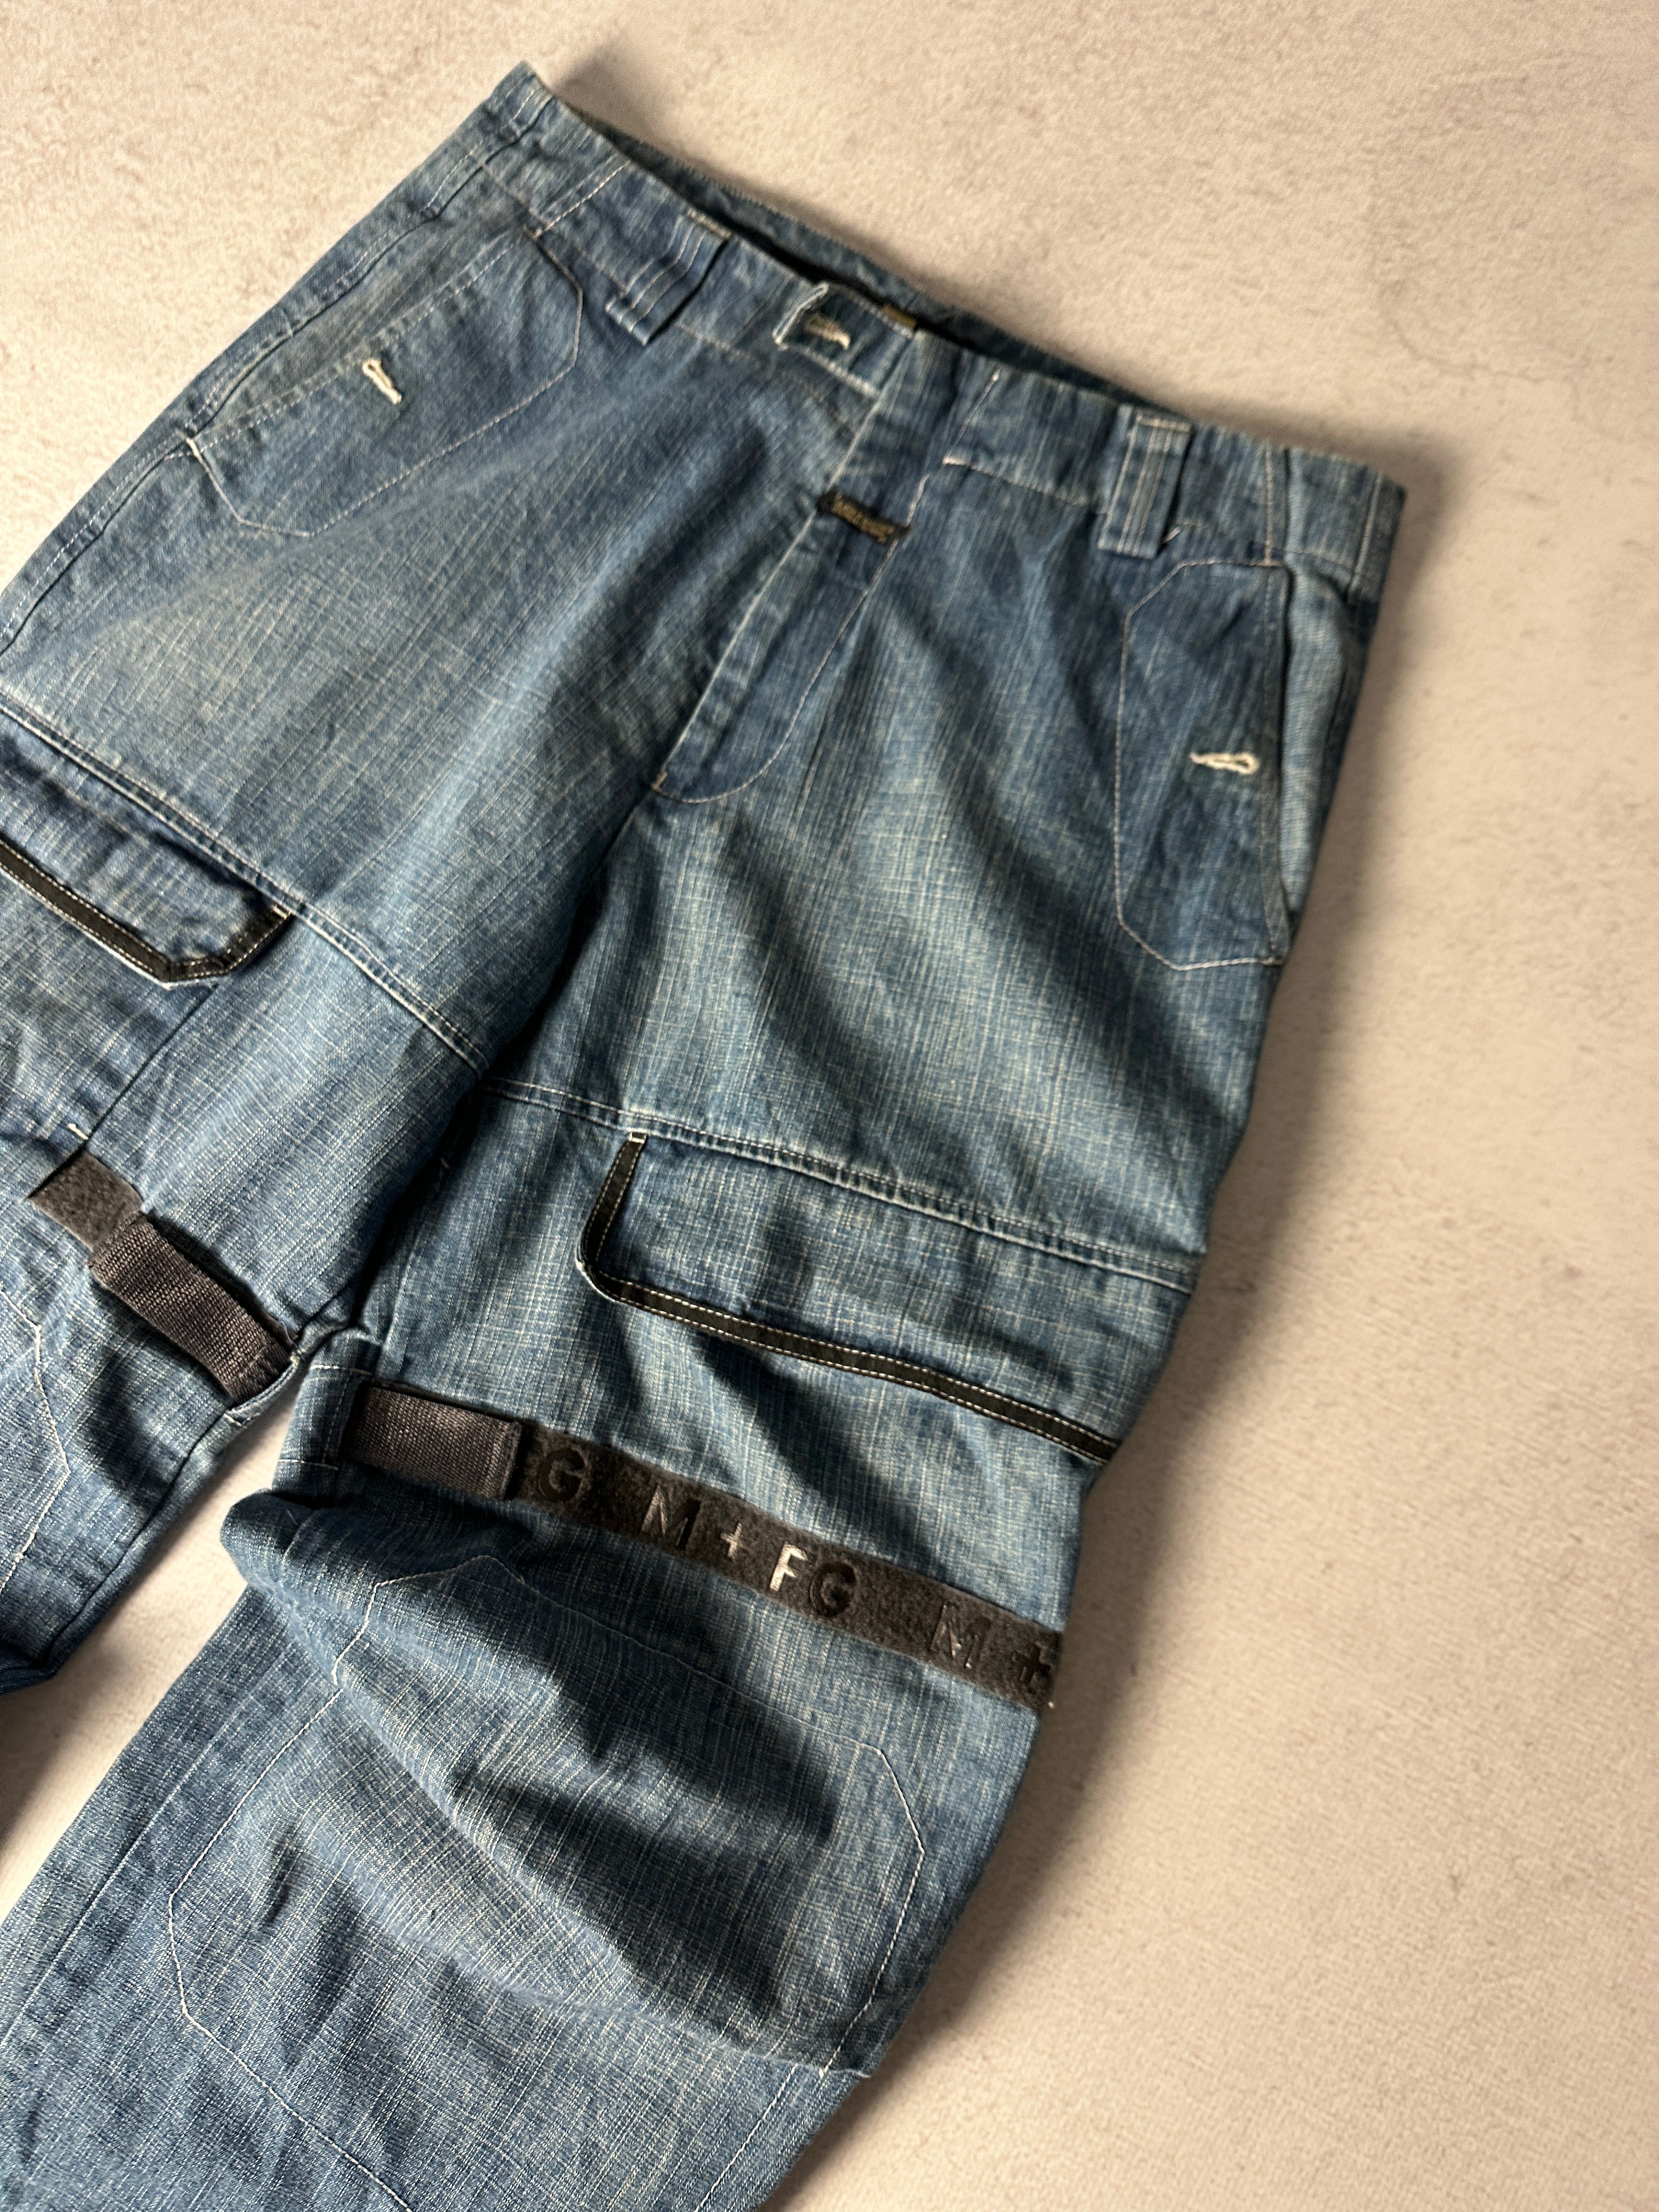 Vintage Marithe Francois Girbaud Jeans - Men's 36W32L